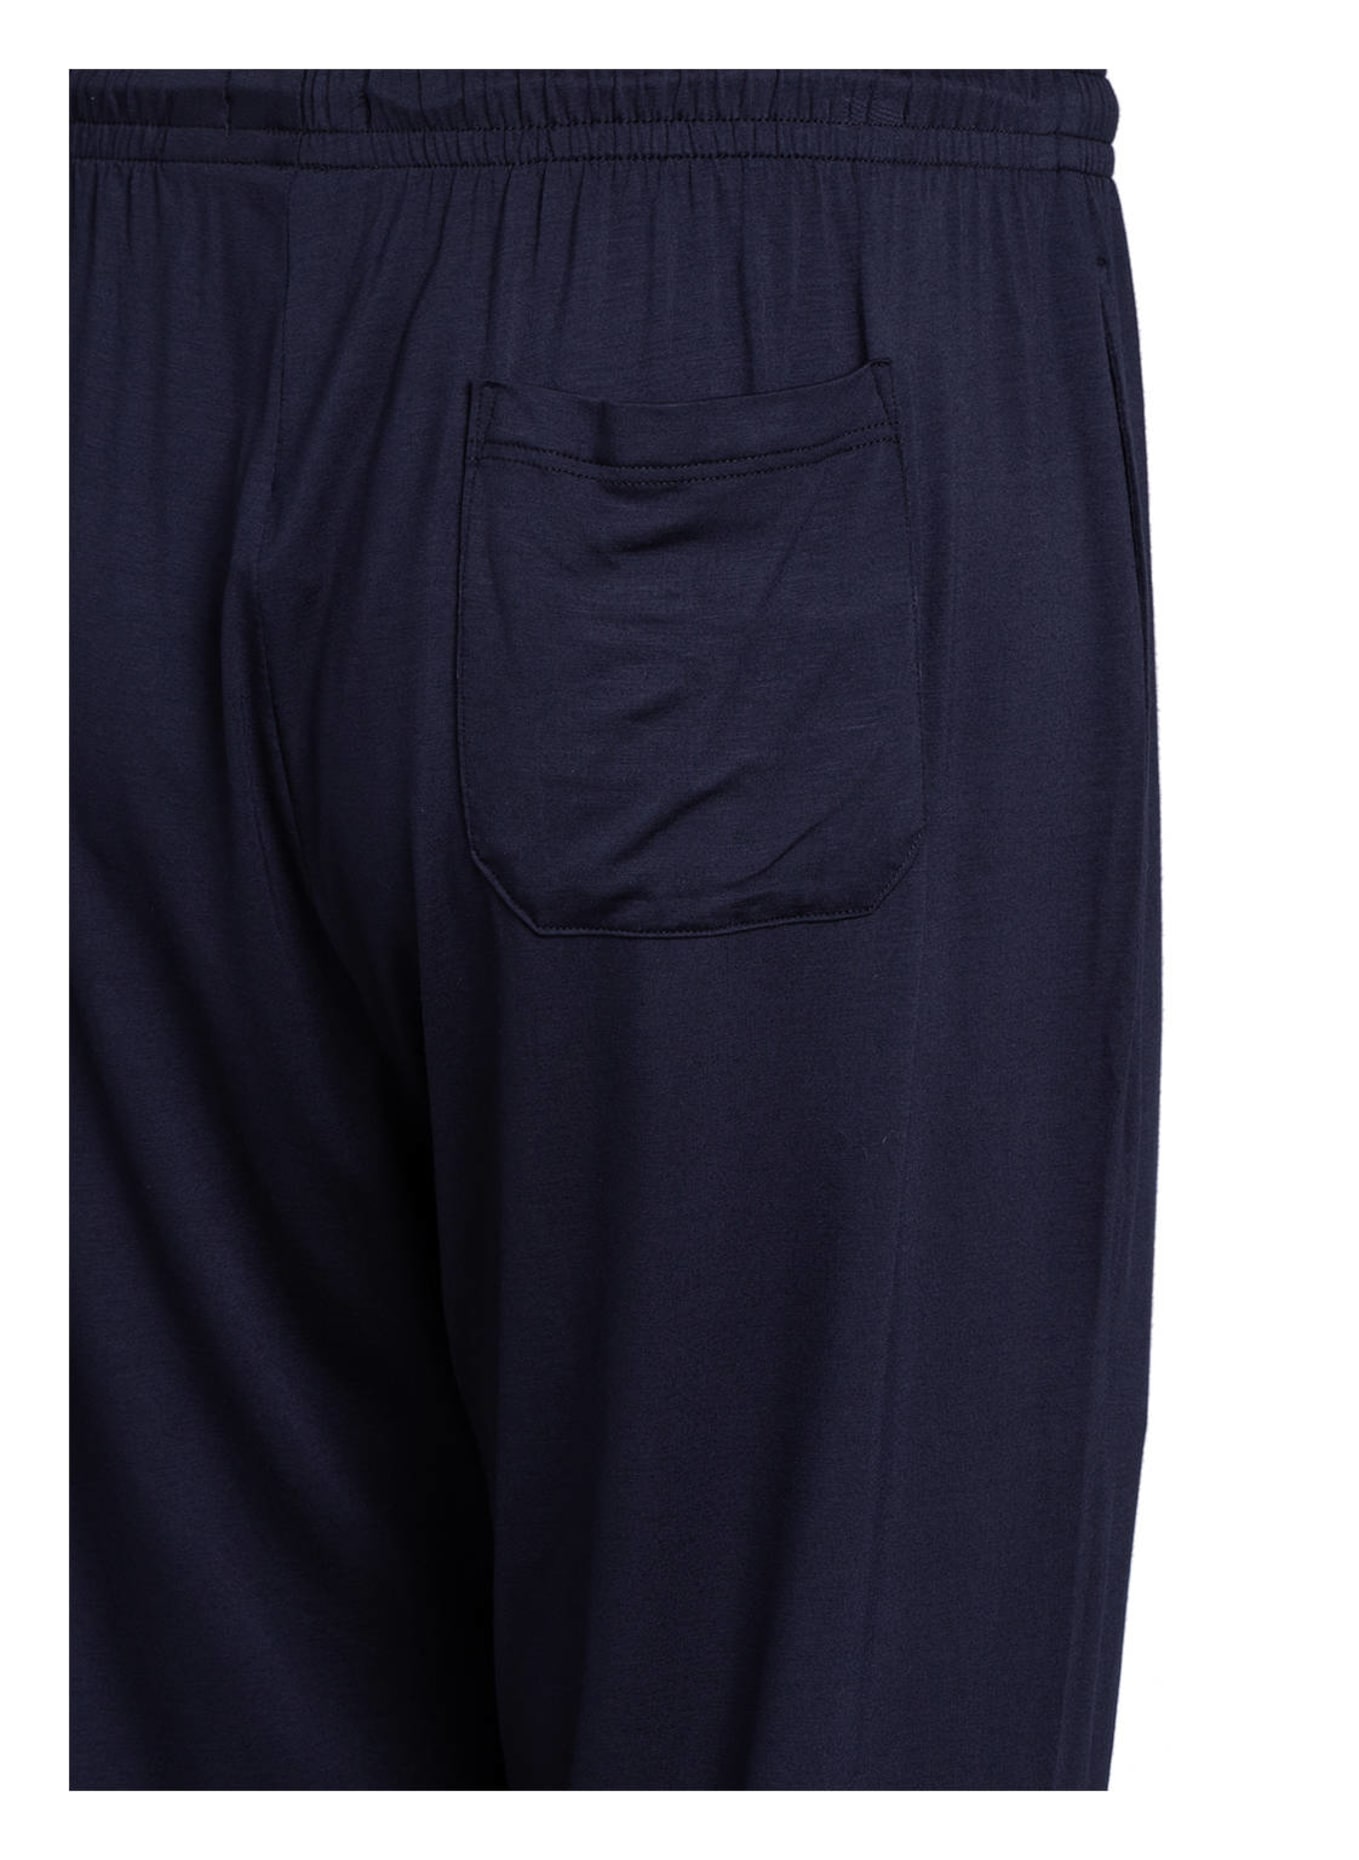 mey Pajama shorts series JEFFERSON MODAL, Color: DARK BLUE (Image 3)